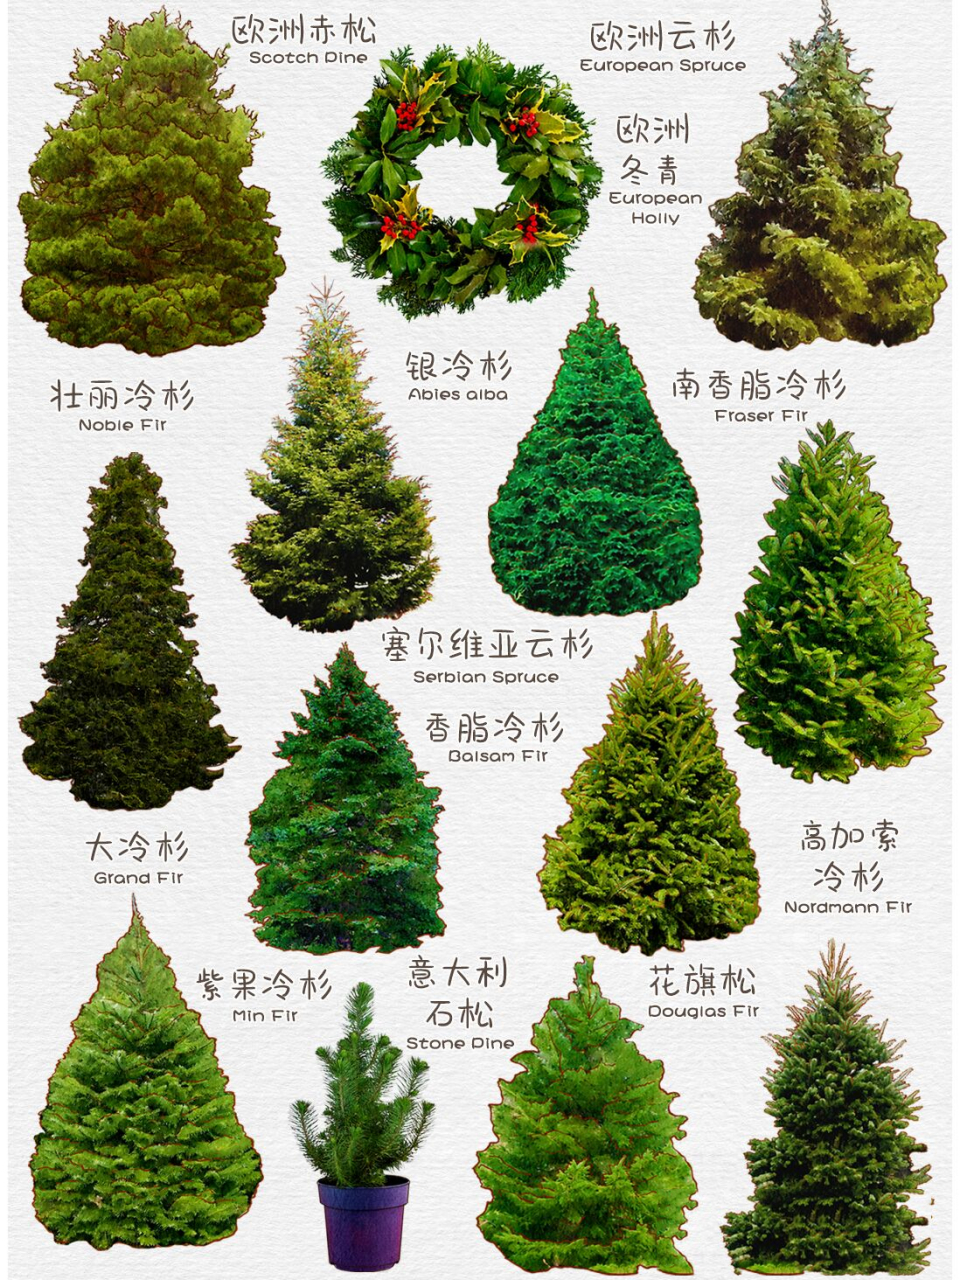 原来圣诞树的种类这么多,圣诞树分类图鉴 天然圣诞树大多是:云杉,冷杉